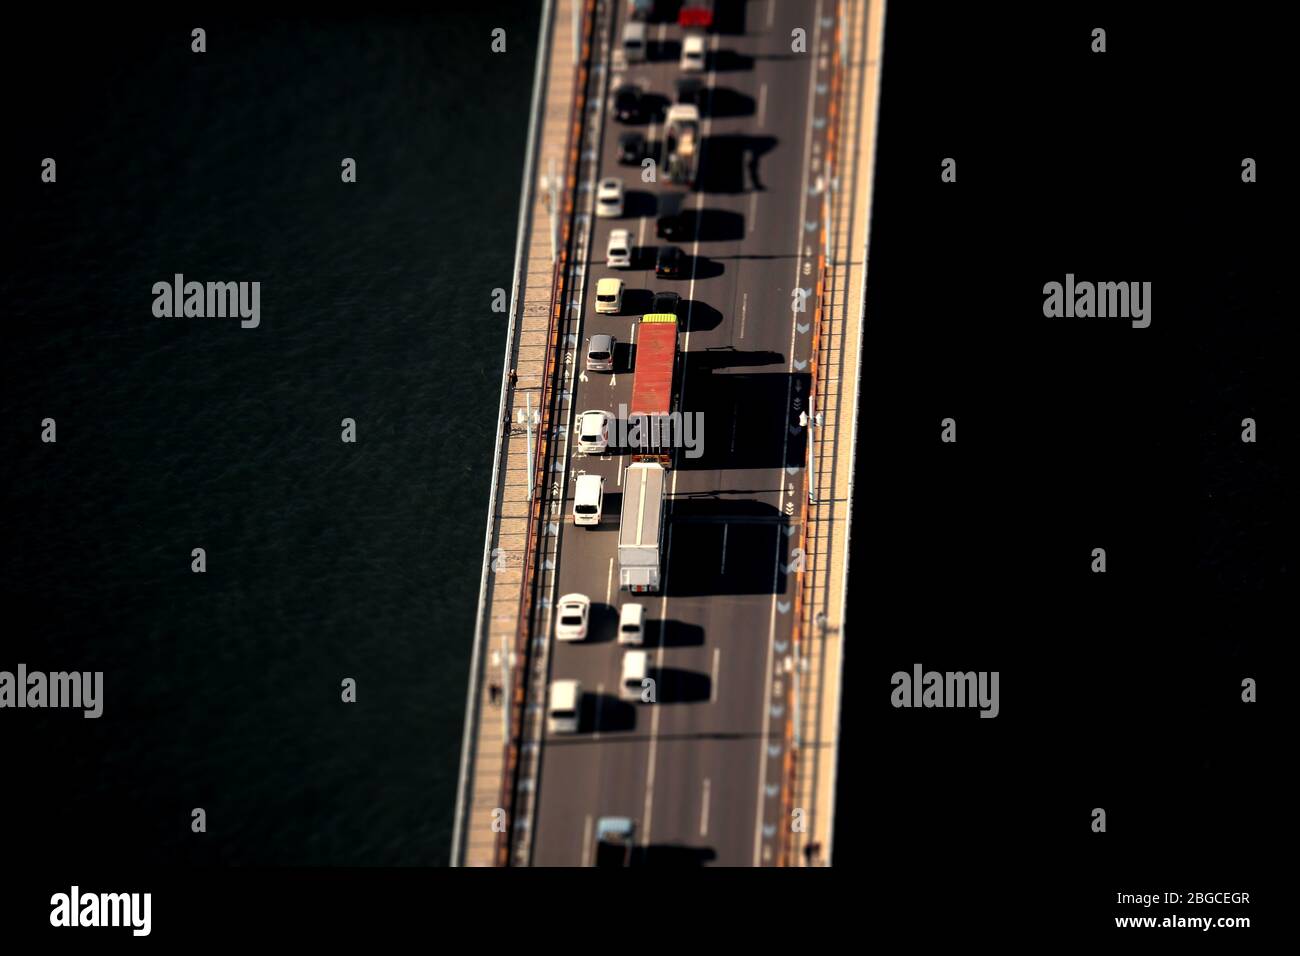 Une photo de style diorama de la situation de circulation des voitures traversant le pont vu d'en haut Banque D'Images